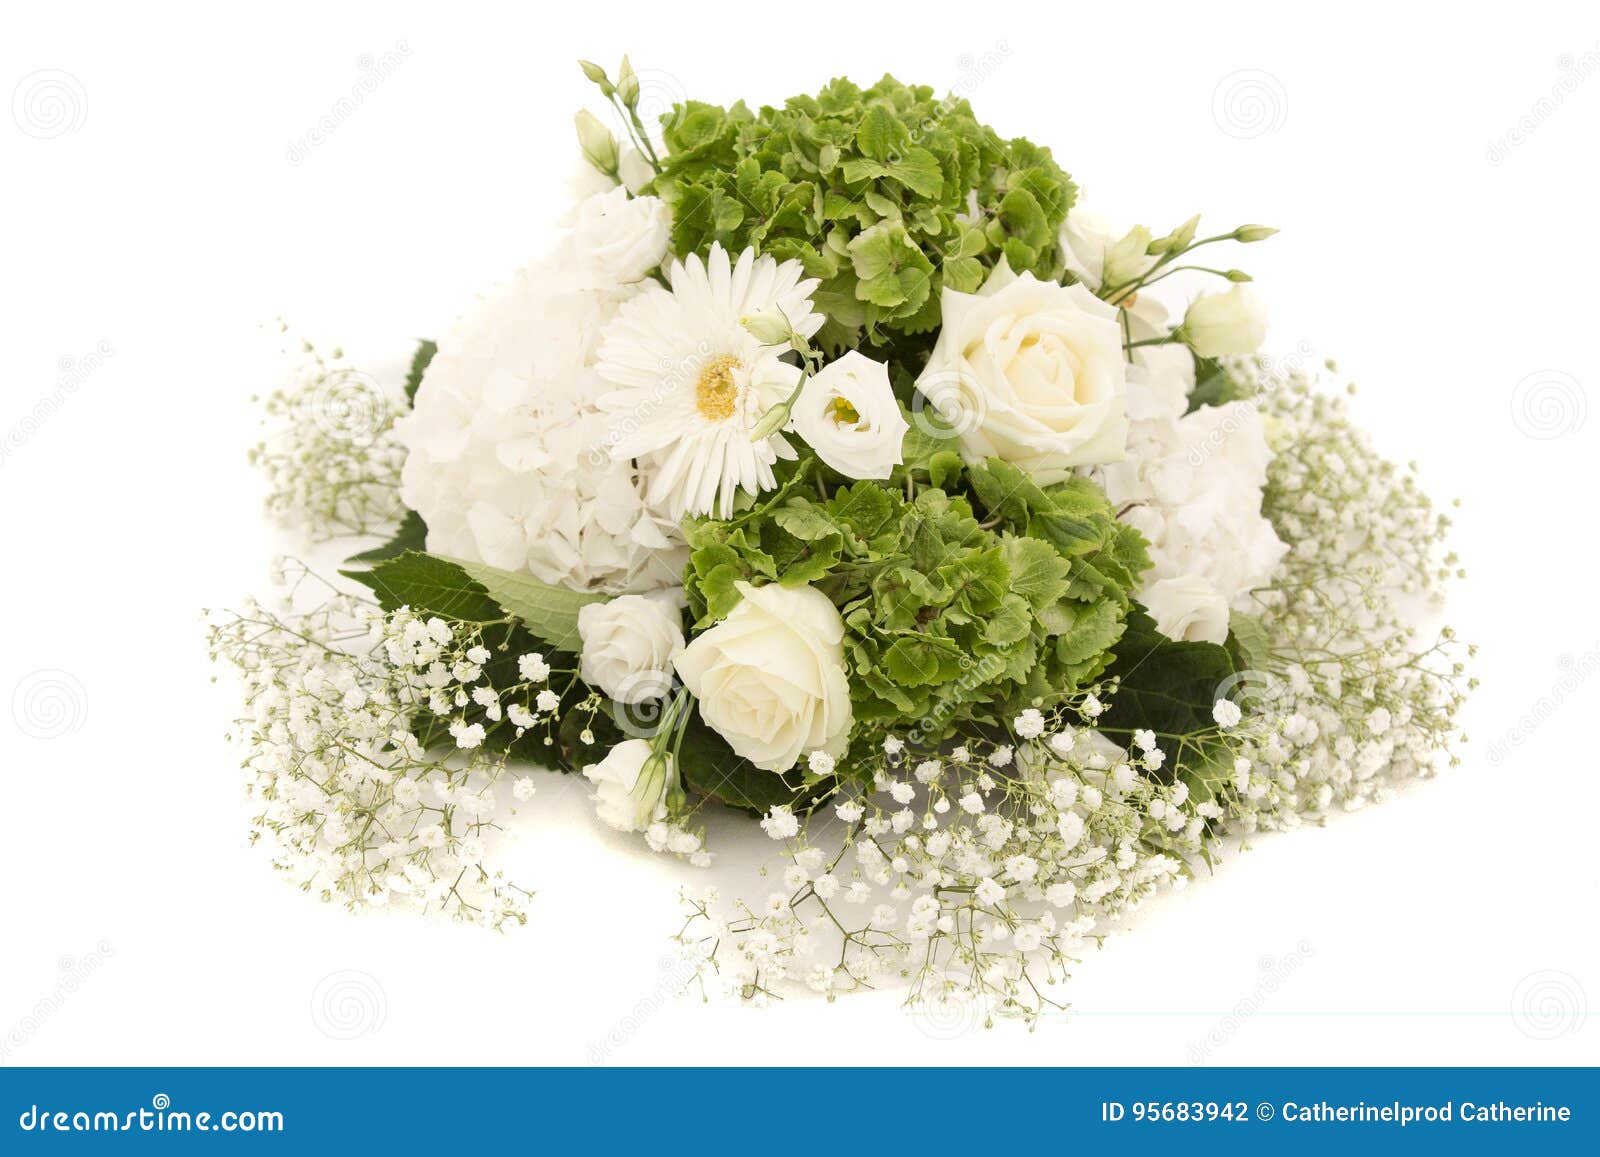 Hortensia Blanco Y Verde U Ortensia De La Flor De La Hortensia Con Las  Rosas Blancas Y El Gypsophila Ornamentos De La Decoración Foto de archivo -  Imagen de blanco, romance: 95683942